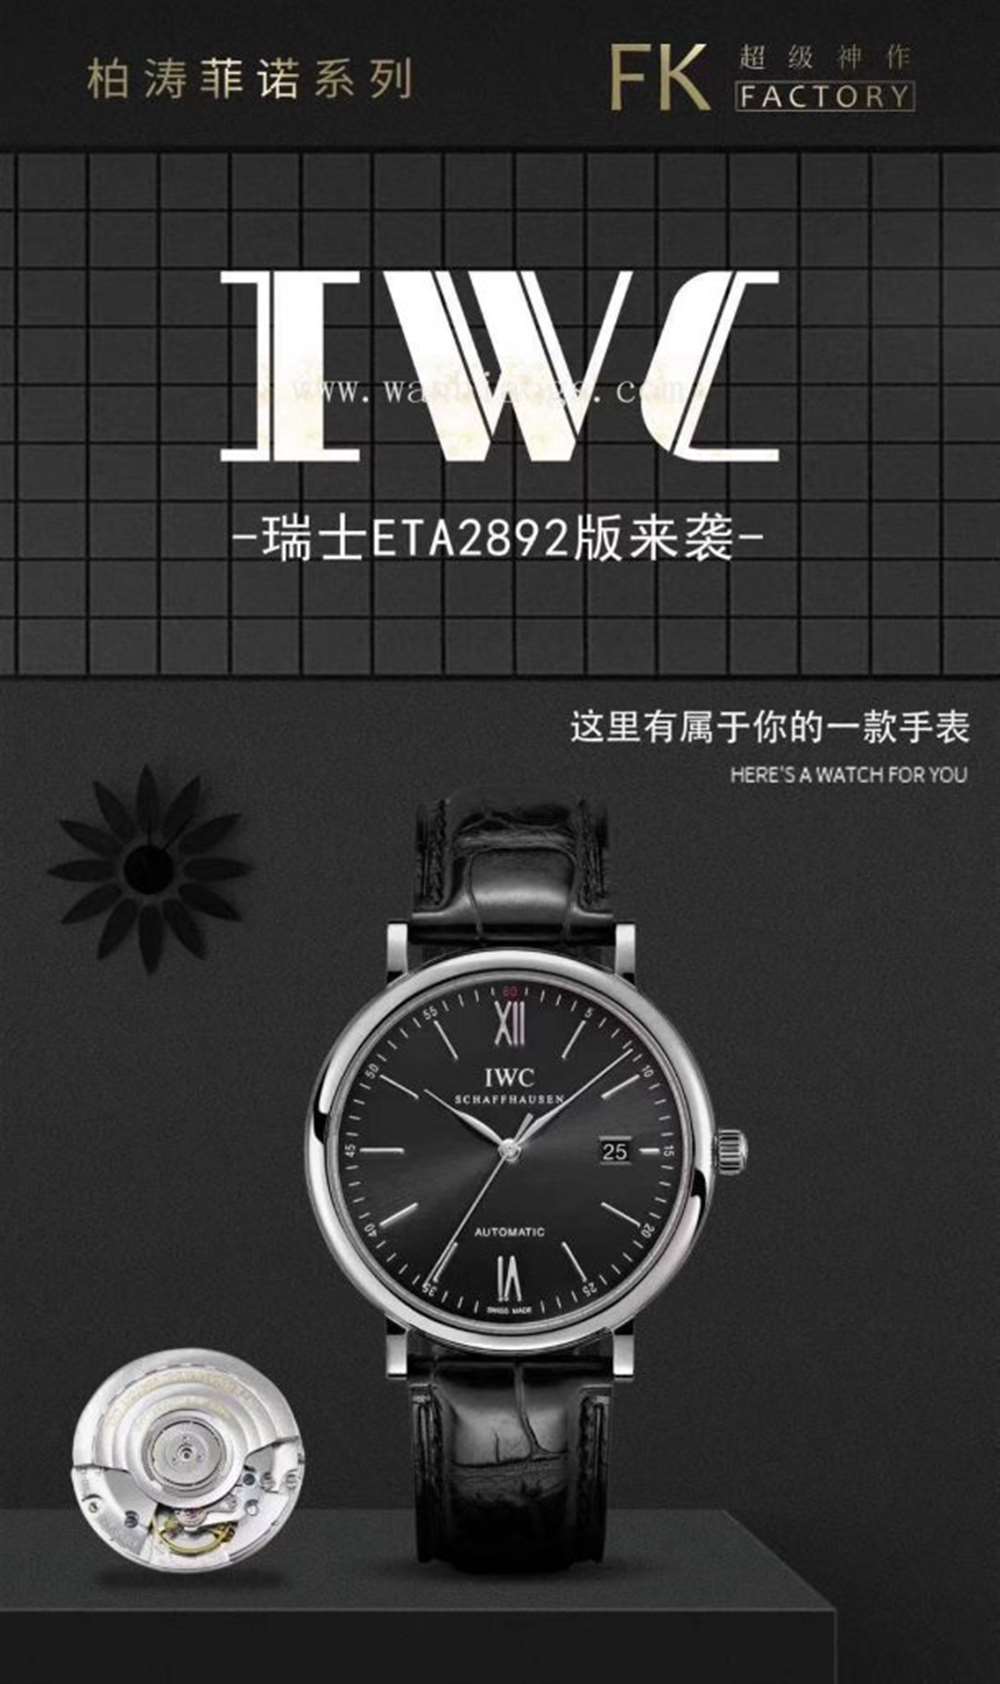 FK厂万国柏涛菲诺系列IW35630腕表—对比正品评测  第13张